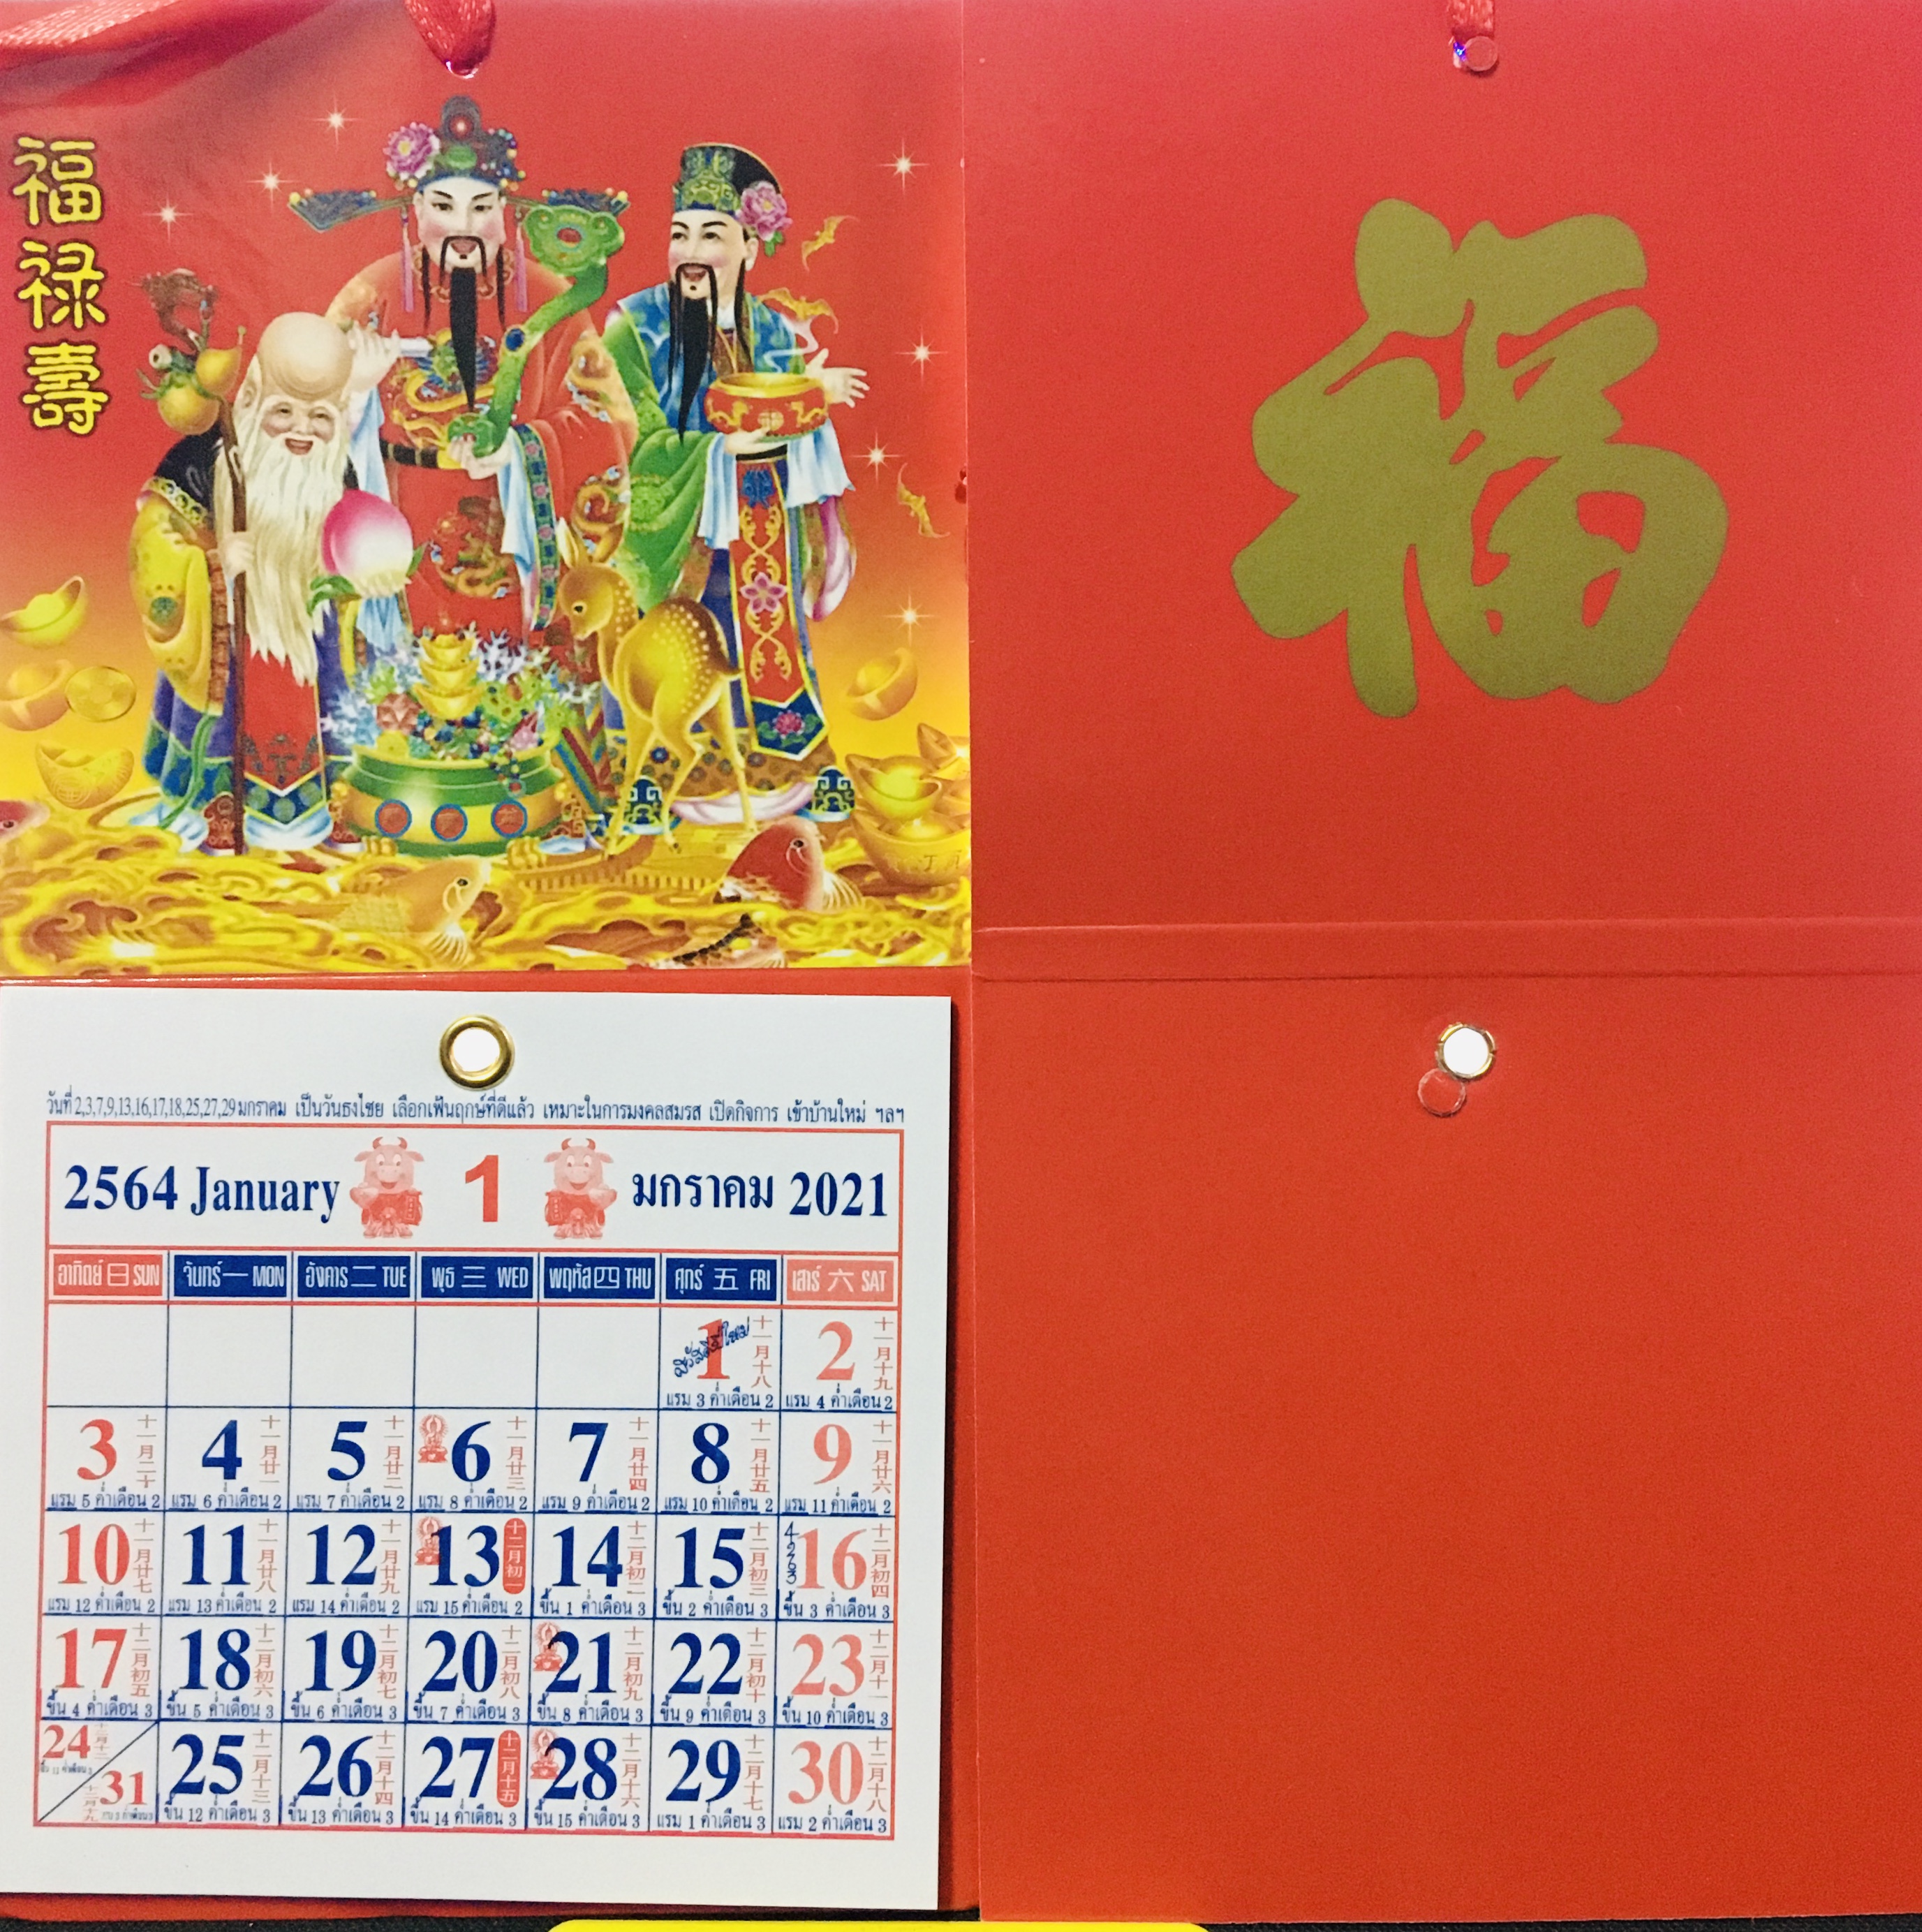 1ฉบับ ปฏิทินจีน 2564 ชุดมงคลจีน ฮก ลก ซิ่วโชคลาภ ปฏิทินจิ๋ว แขวนได้ พกพาสะดวก วันพระไทย จีน วันดีวันมงคล จำนวน1ฉบับ